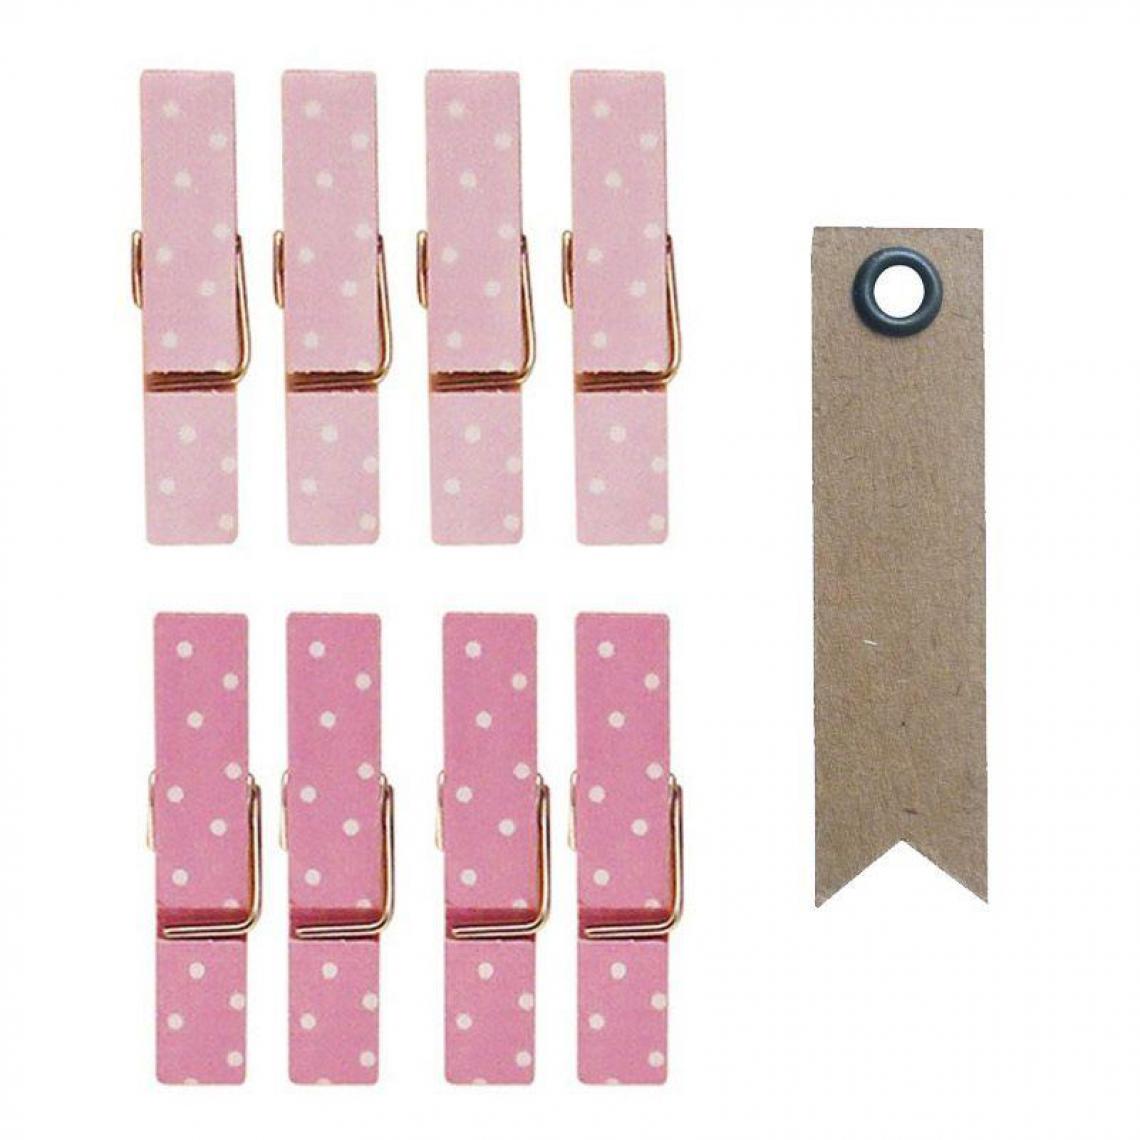 Graines Creatives - 8 mini pinces à linge aimantées rose 3,5 cm + 20 étiquettes kraft Fanion - Objets déco